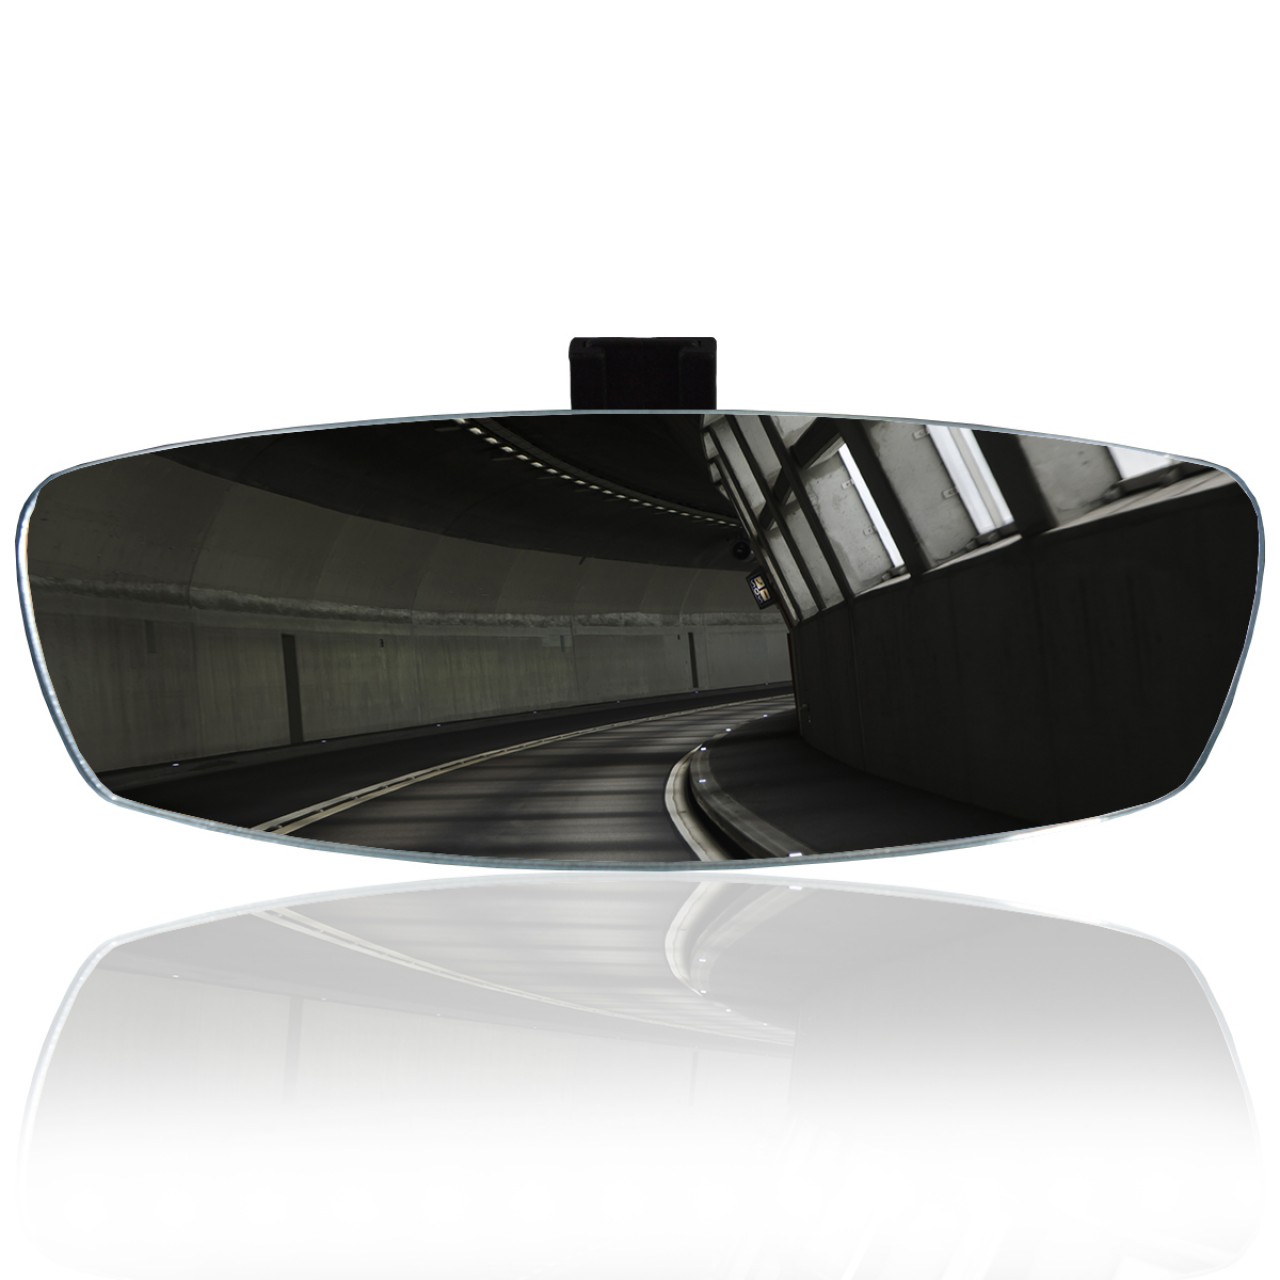 Safir Dik Kollu-1 Universal İç Dikiz Aynası r320 300x90 mm